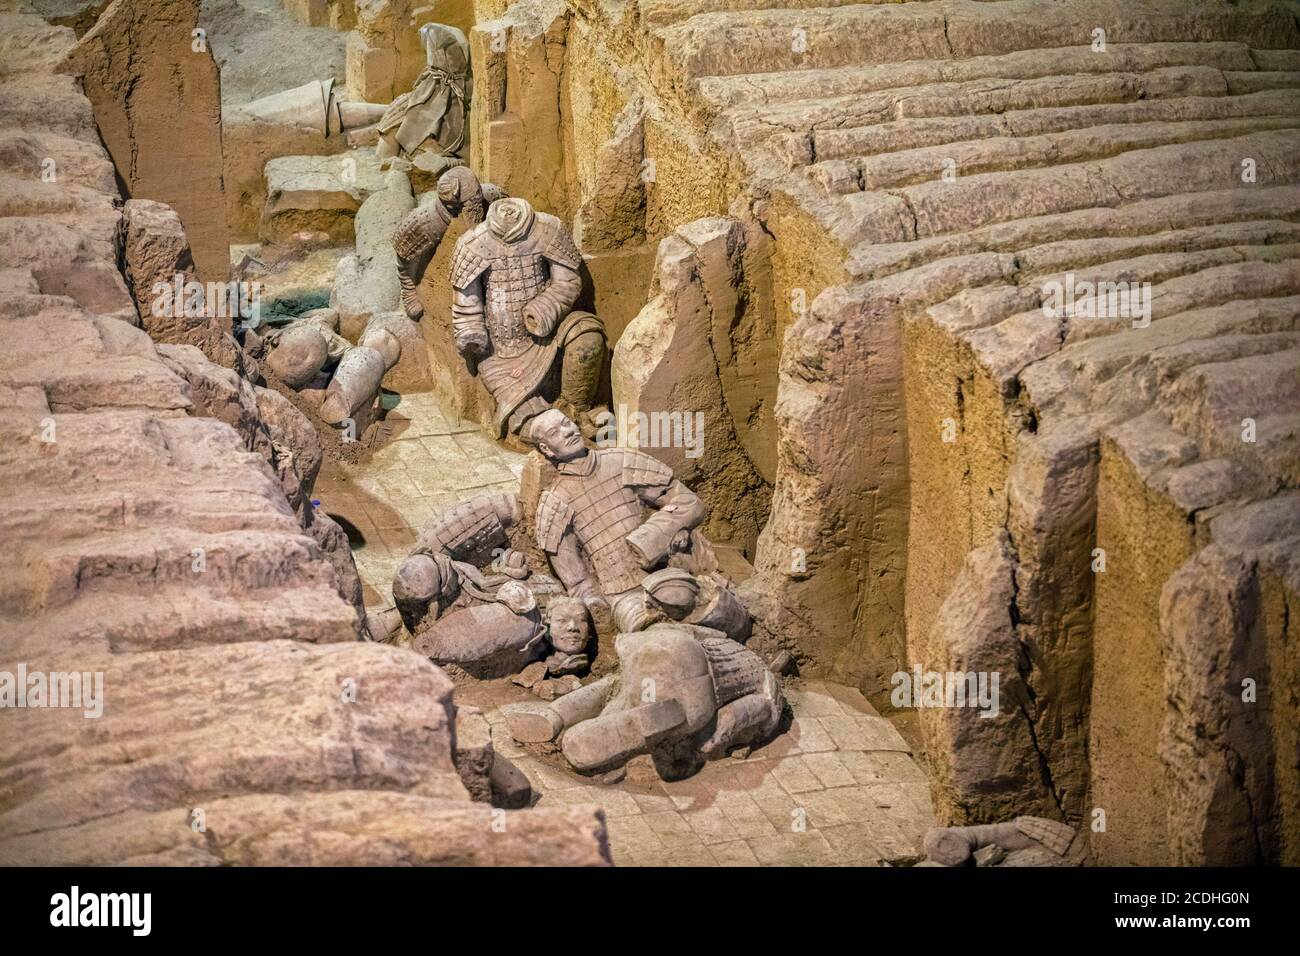 Esercito di terracotta, sculture di soldati raffiguranti gli eserciti di Qin Shi Huang, primo imperatore della Cina vicino a Xi'an / Sian, distretto di Lintong, Shaanxi Foto Stock